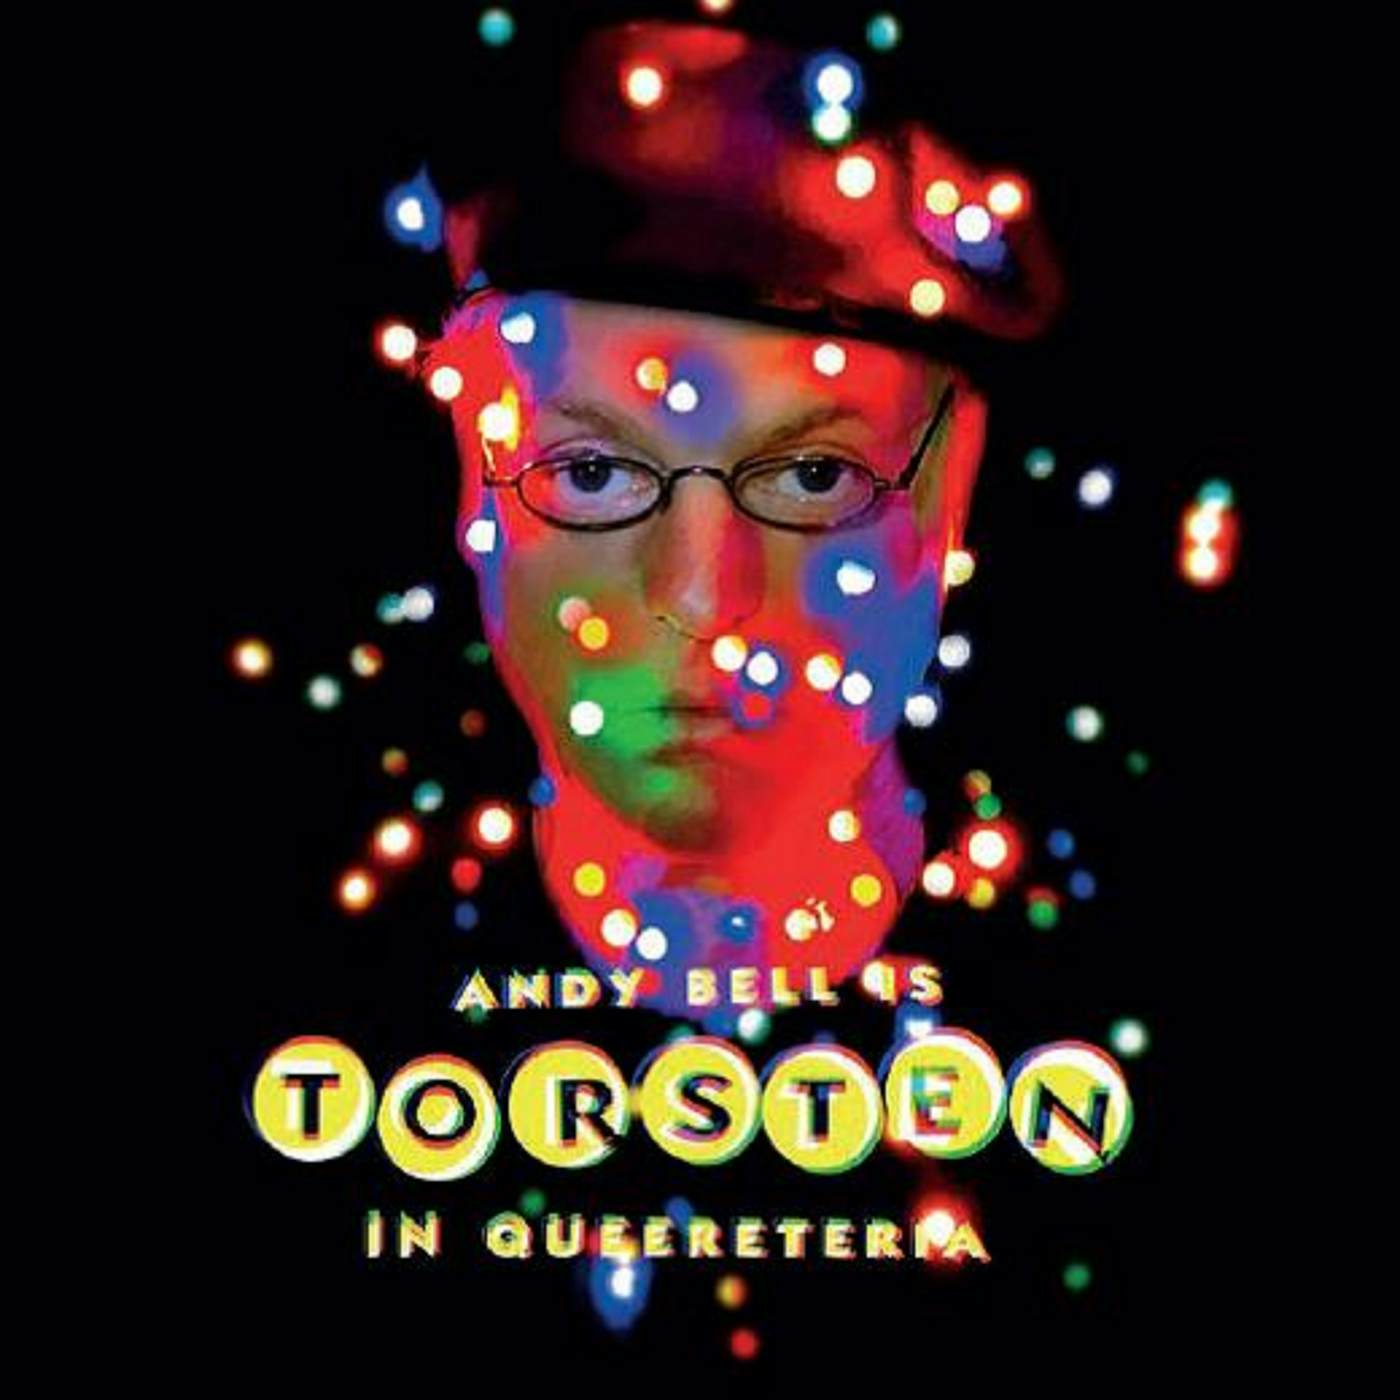 Andy Bell Torsten In Queereteria CD